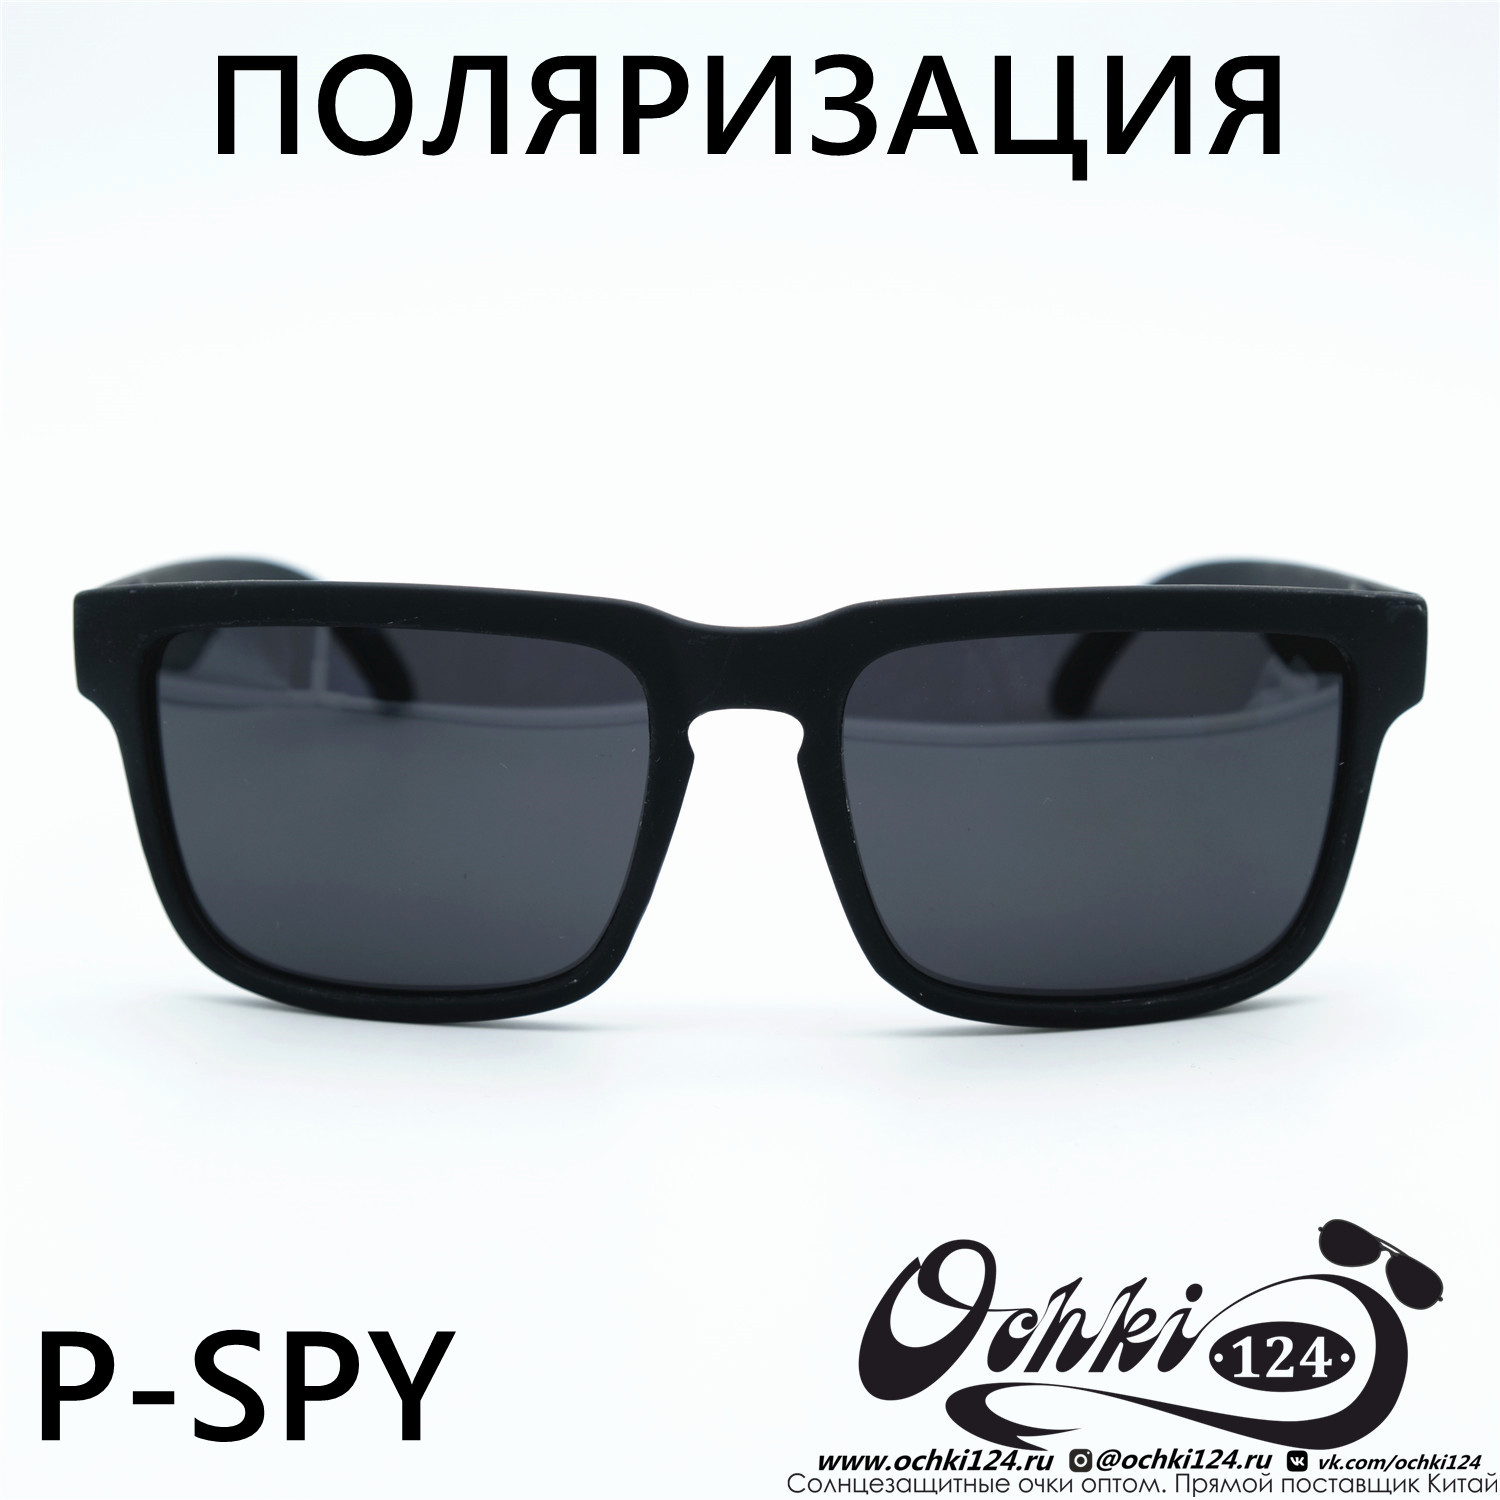  Солнцезащитные очки картинка Мужские MATRIUXT  Квадратные P-SPY-C5 